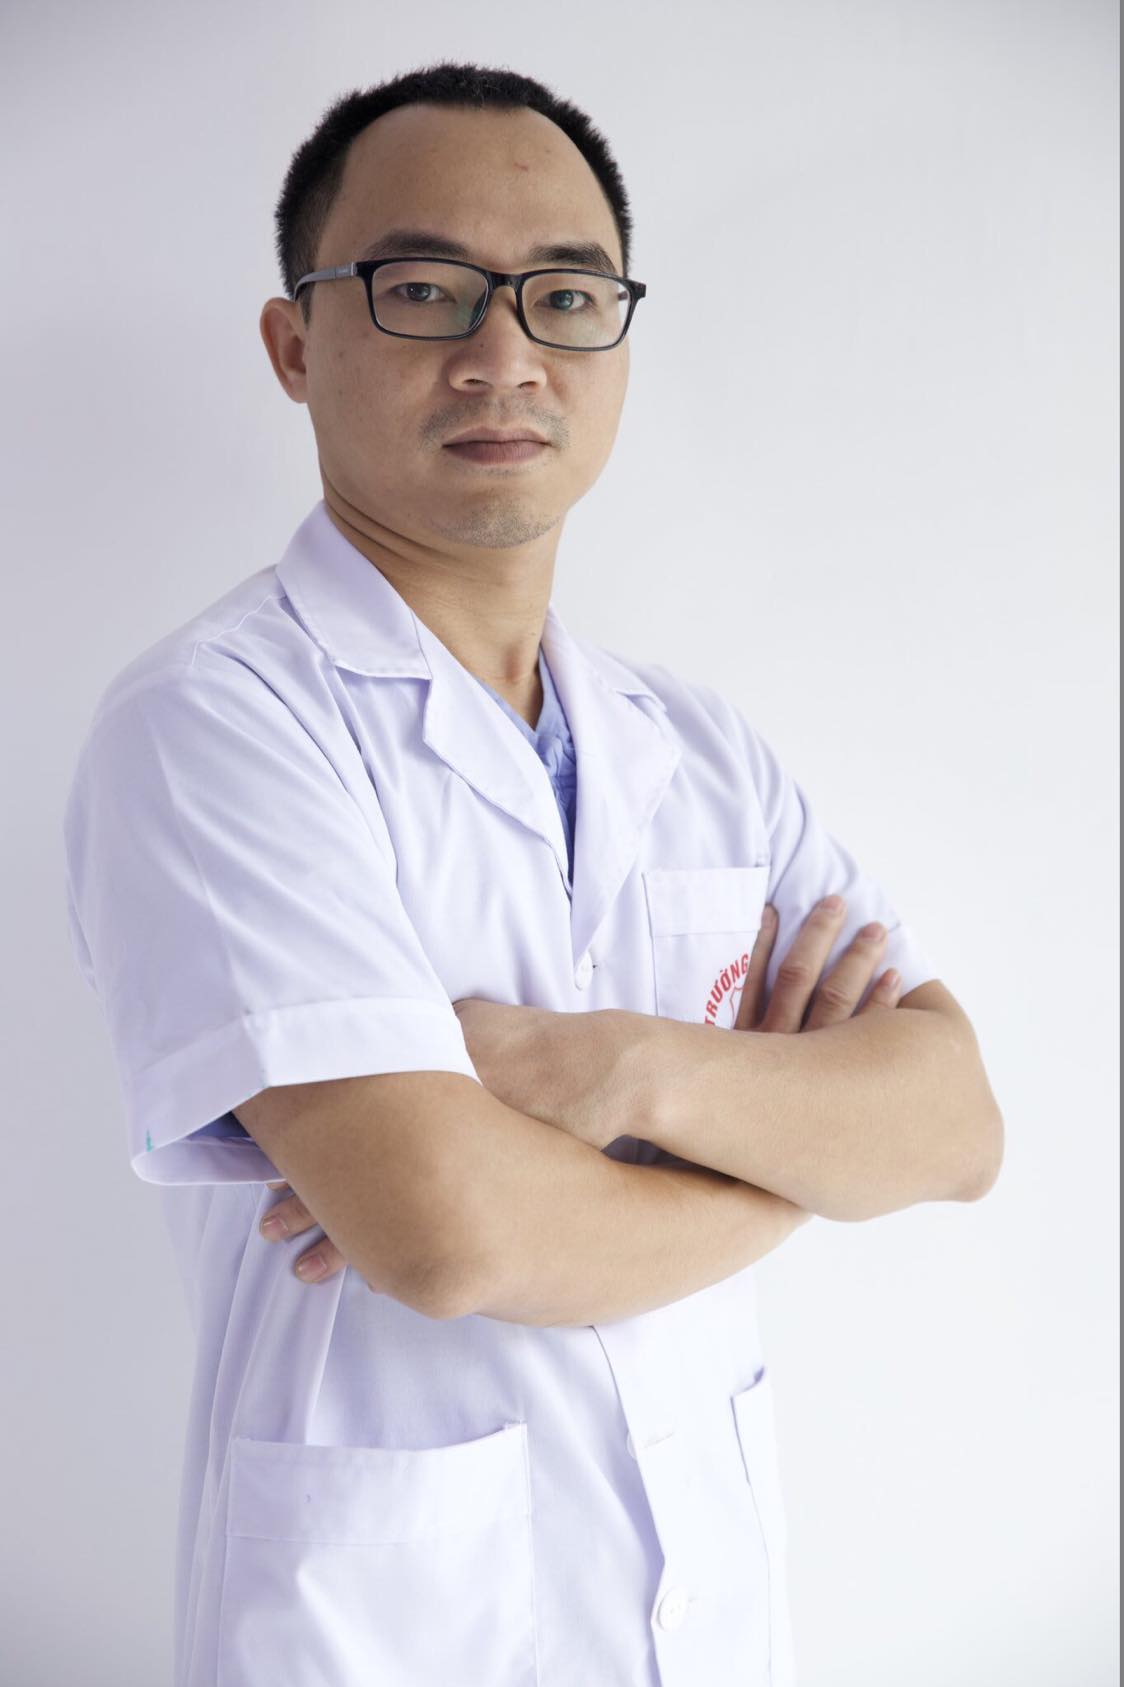 Xã hội - Bác sĩ Lê Việt Hưng: “Tận tâm với nghề, cố gắng học hỏi và nghiên cứu sâu hơn về lĩnh vực thẩm mỹ”